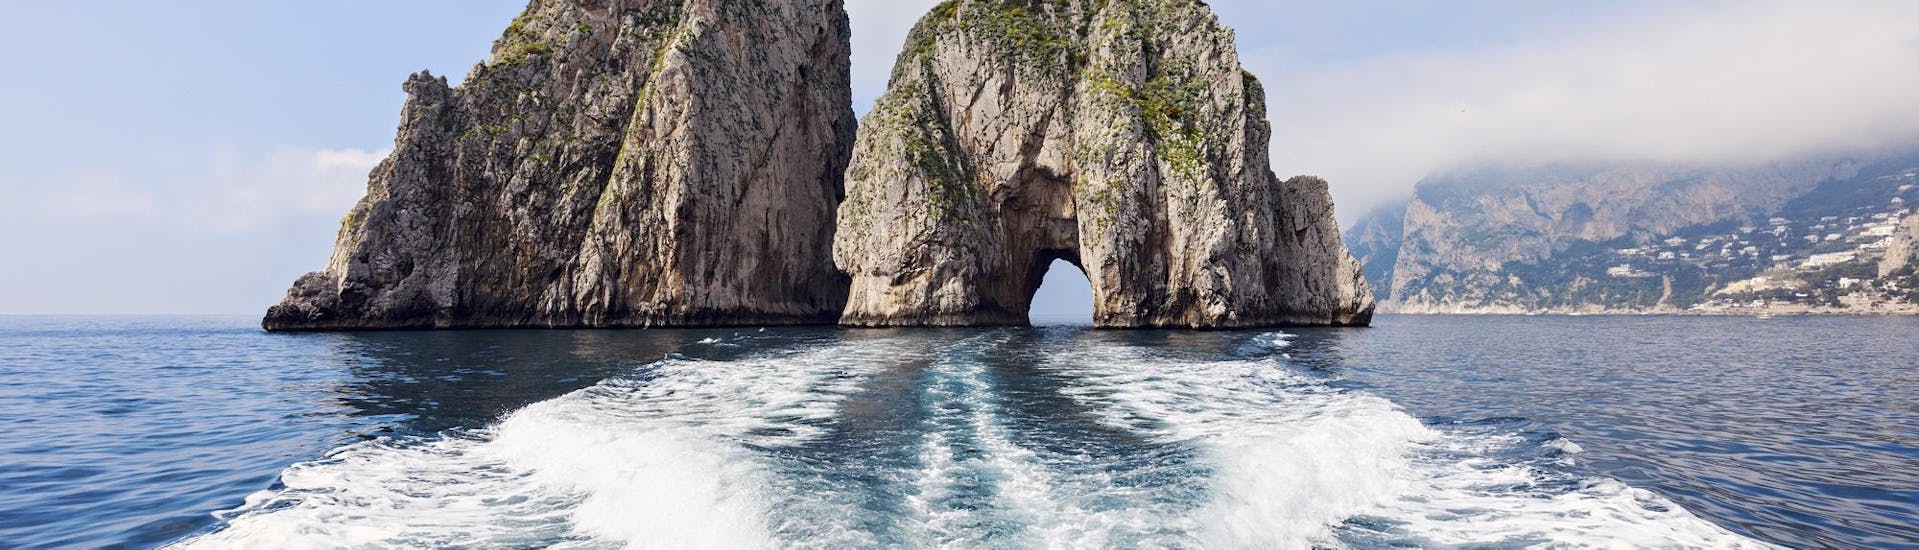 Una splendida vista sui Faraglioni che si può ammirare partecipando alla gita in barca per piccoli gruppi da Sorrento a Capri.